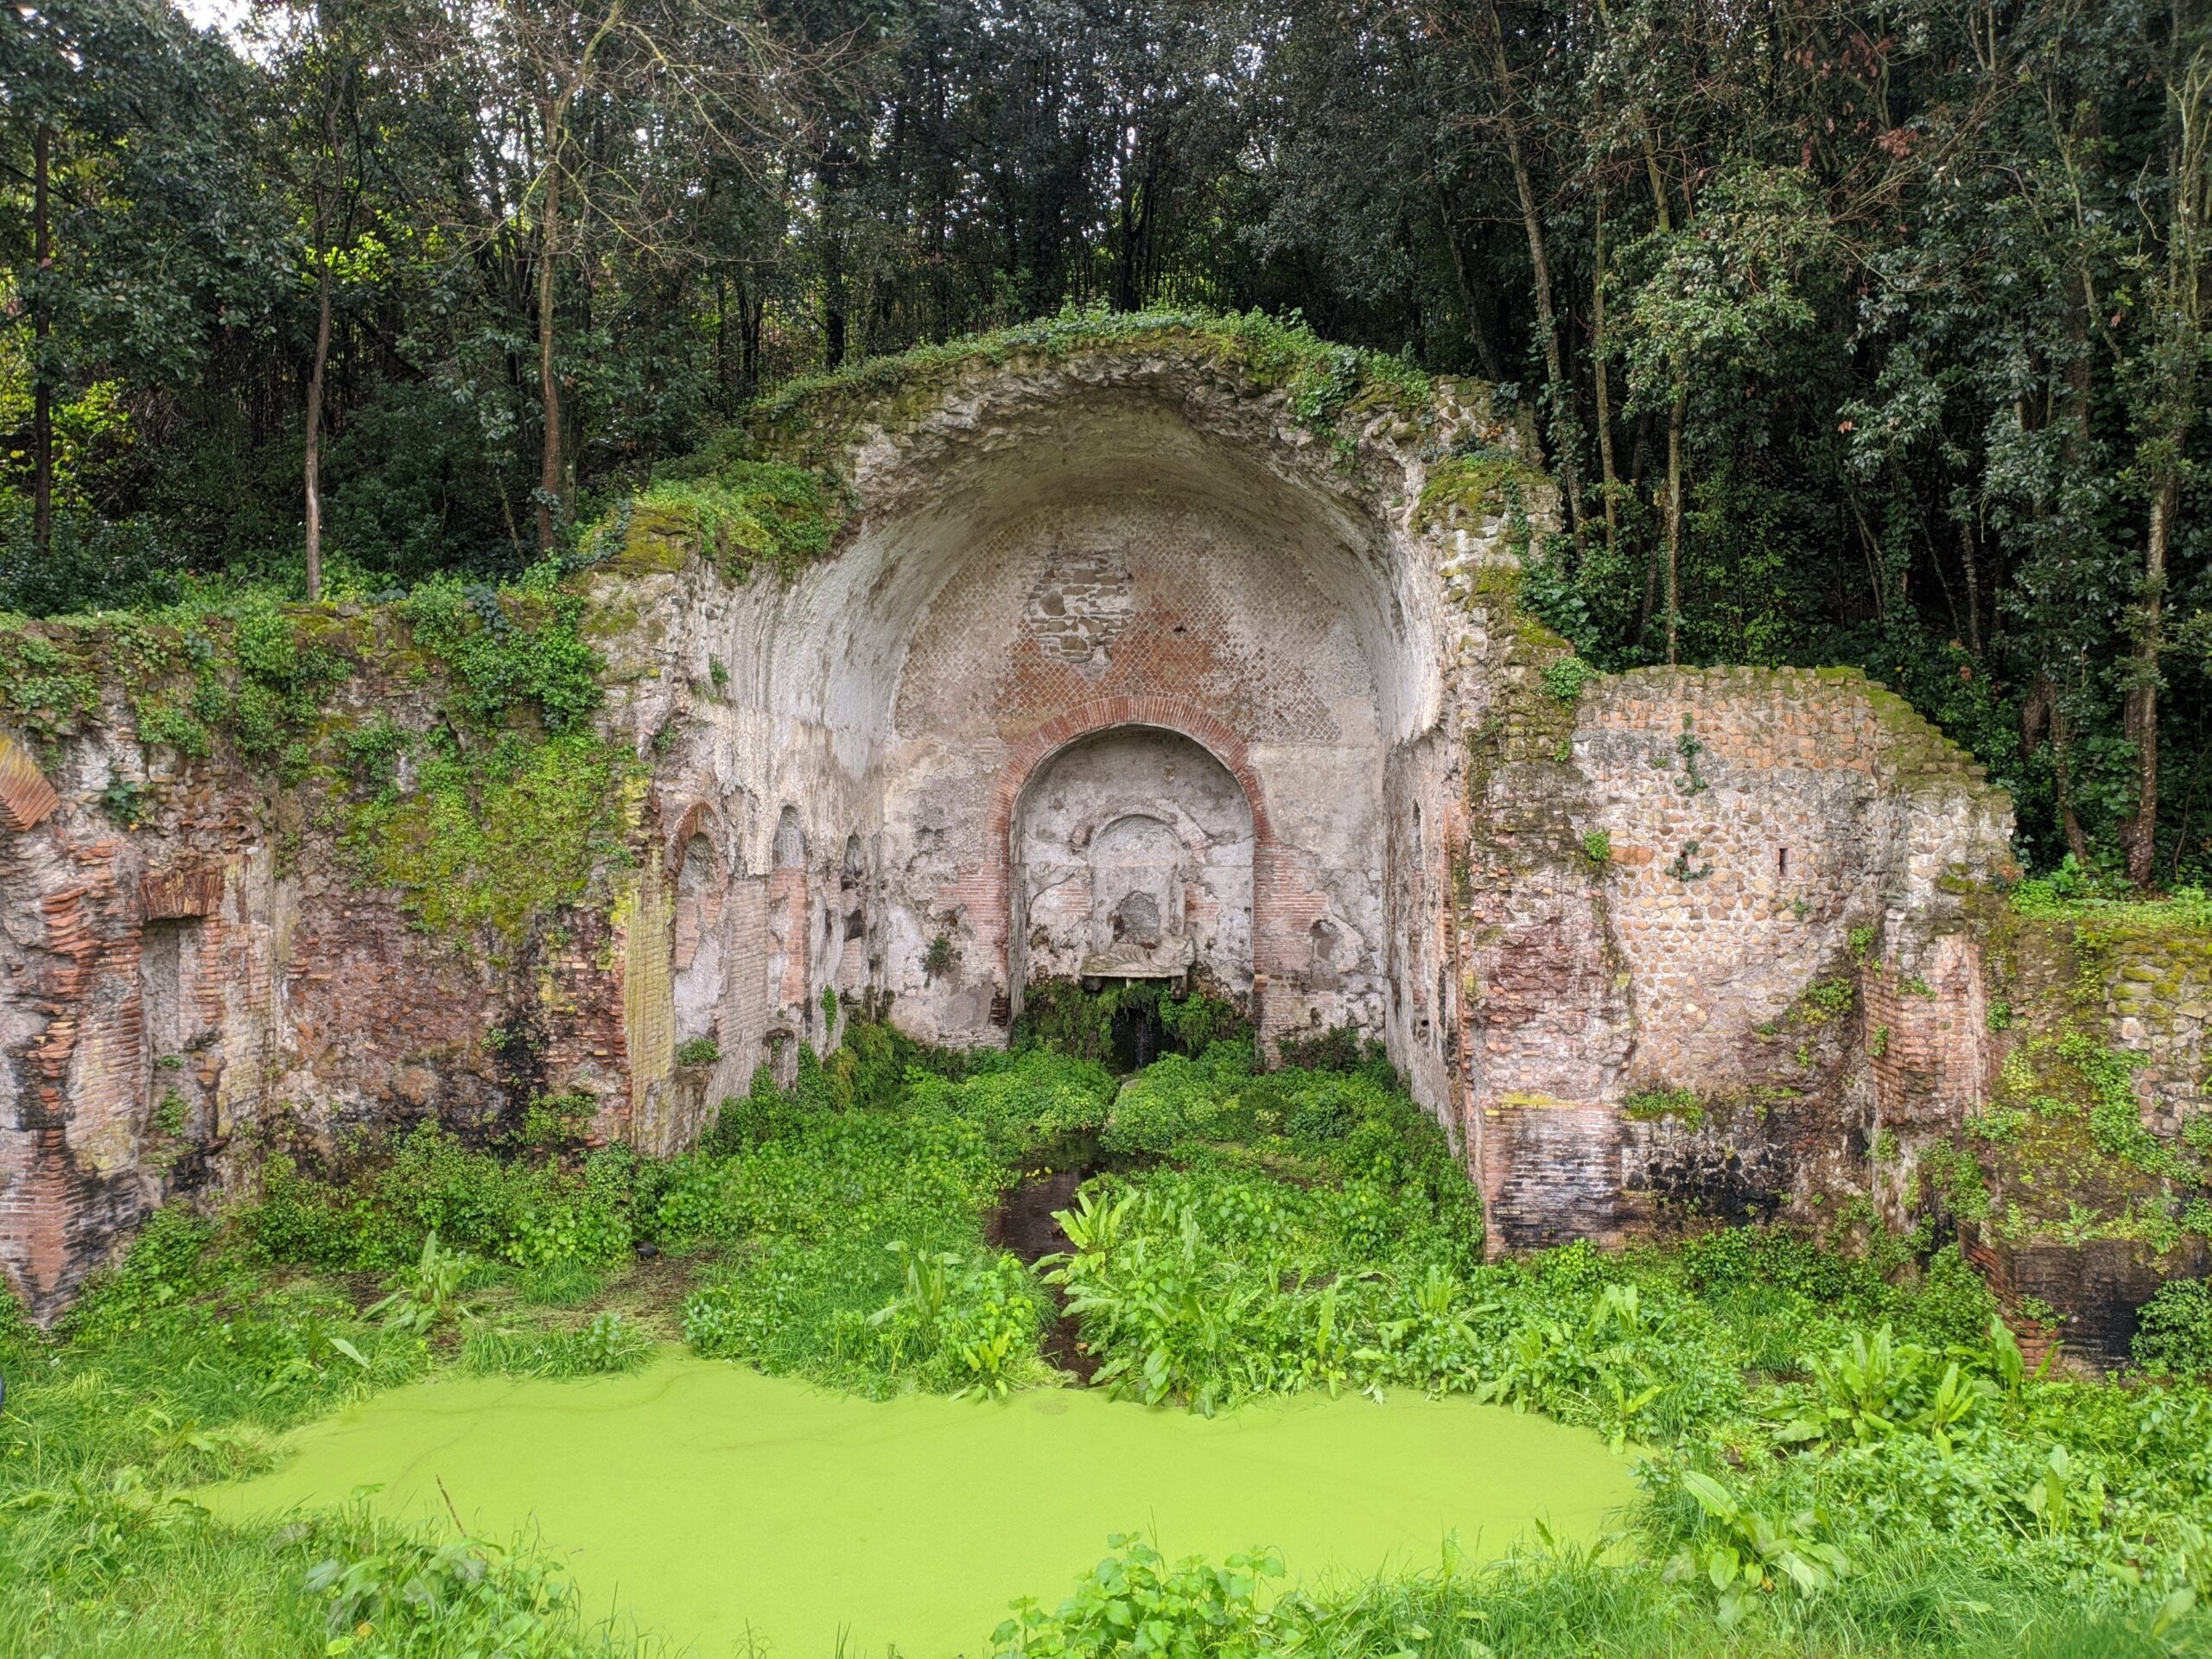 Foto de um templo antigo encravado em uma pedra, revelando uma antiga gruta e seus adornos. O seu solo lembra um pântano.